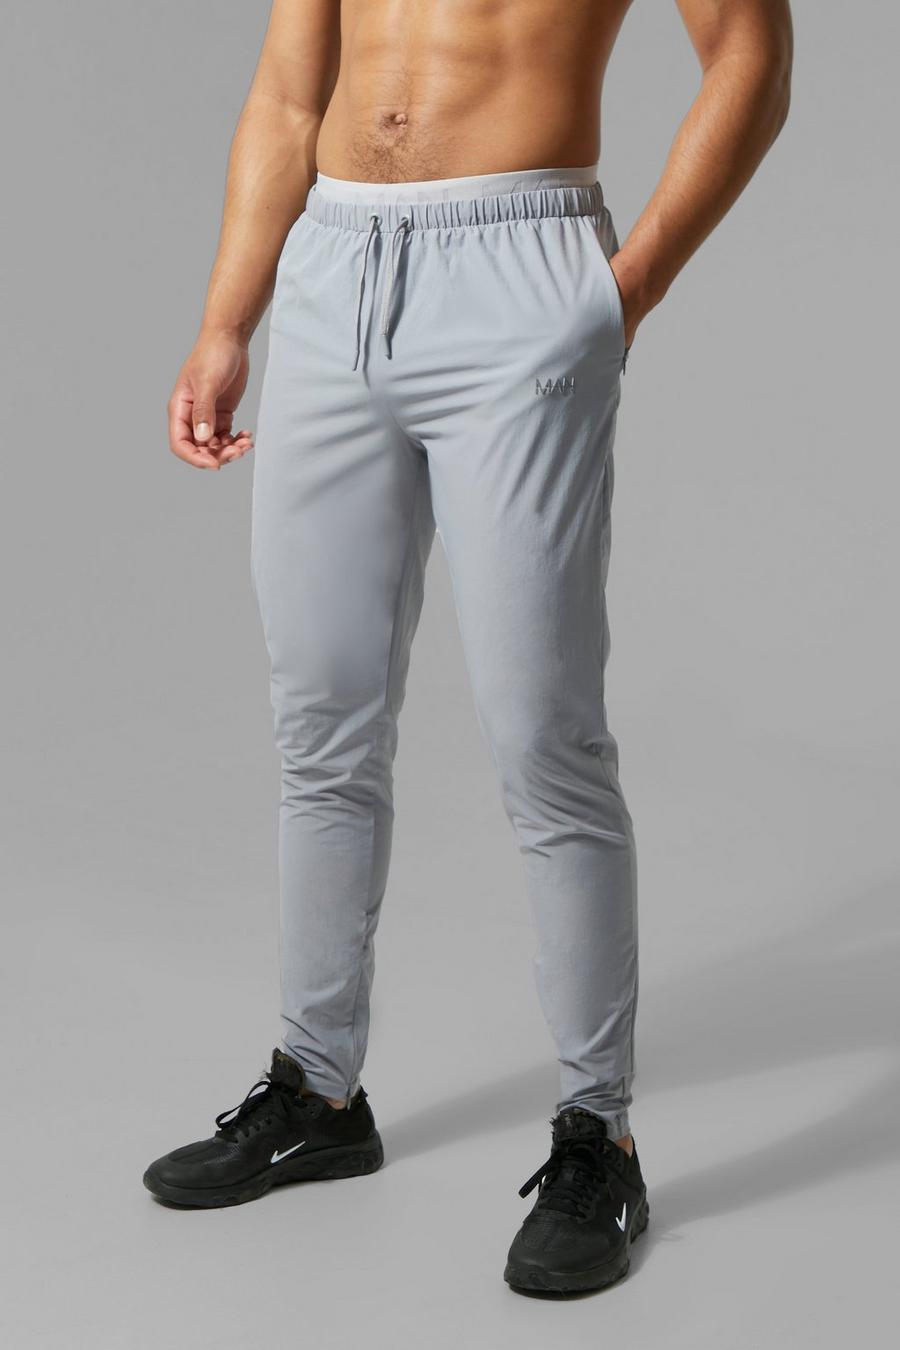 אפור grigio מכנסי ריצה עם כיתוב Man וגומי מעוטר במותניים לגברים גבוהים